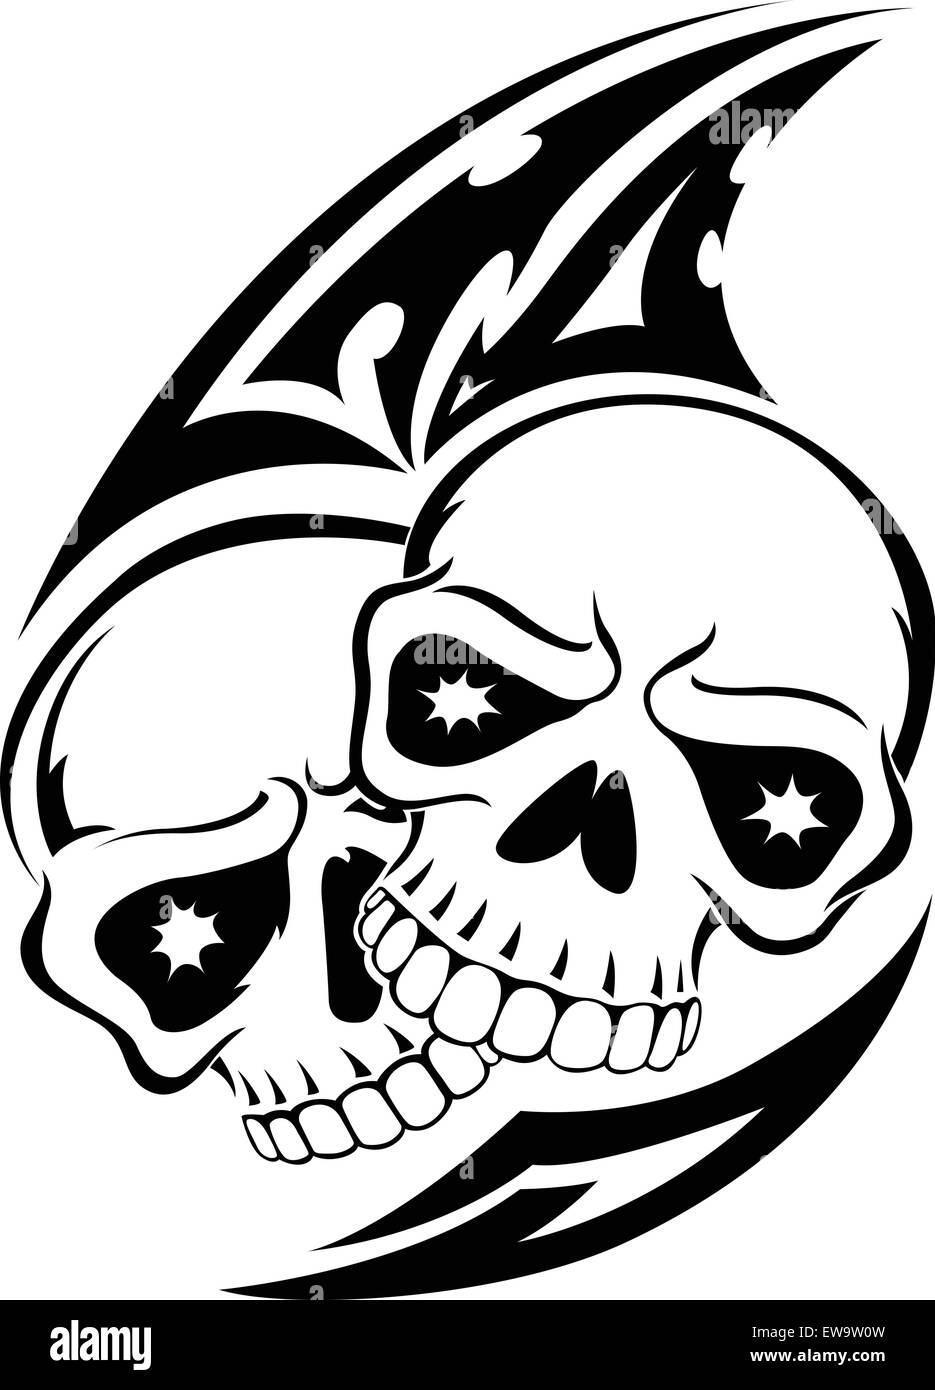 Med Tech. Запись со стены. | Pirate skull tattoo designs, Skull girl tattoo,  Skull tattoo design